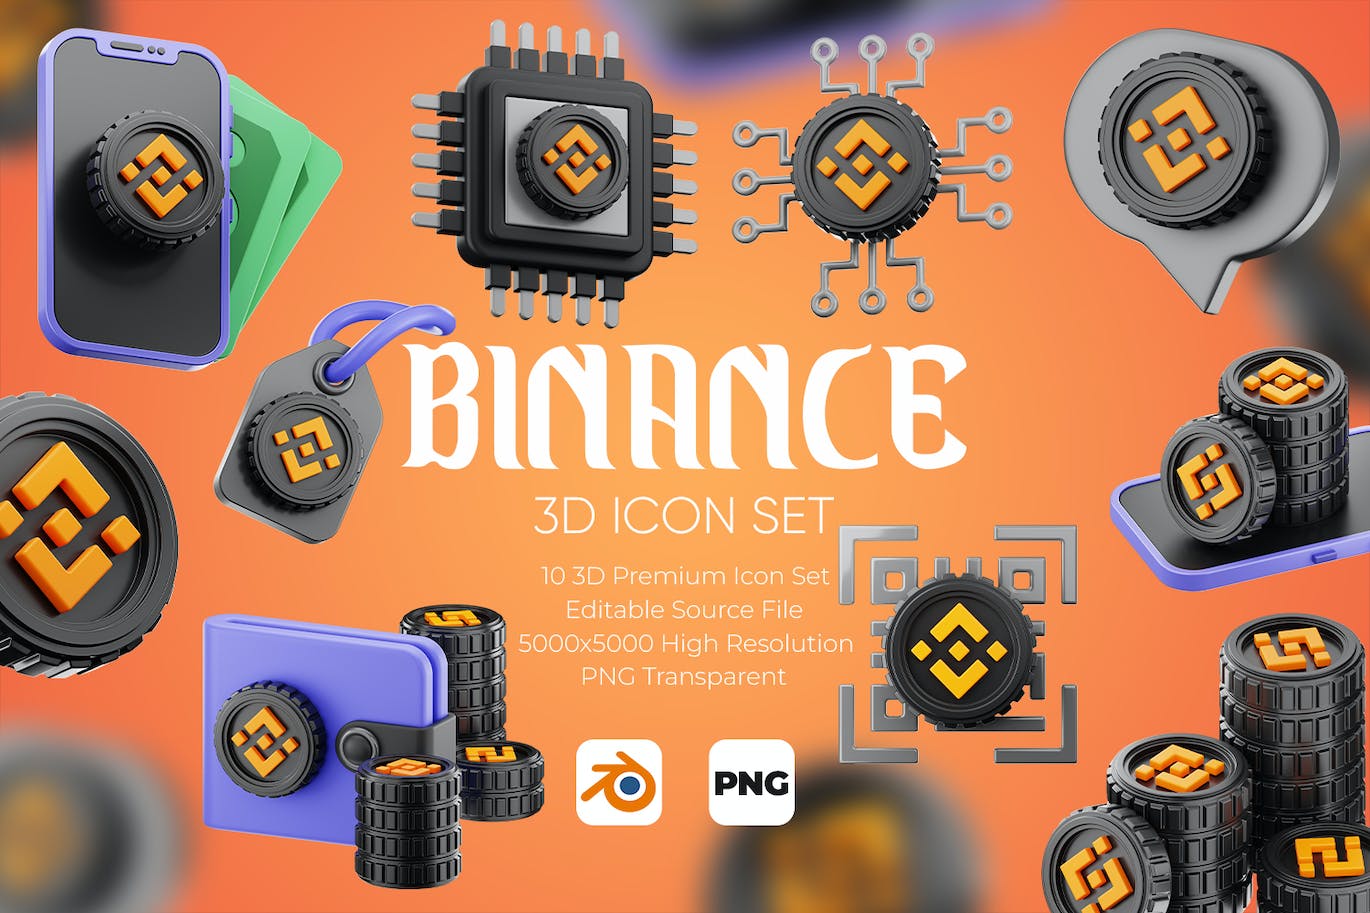 金融元素3D图标集 Binance 3D Icon Set 图标素材 第1张